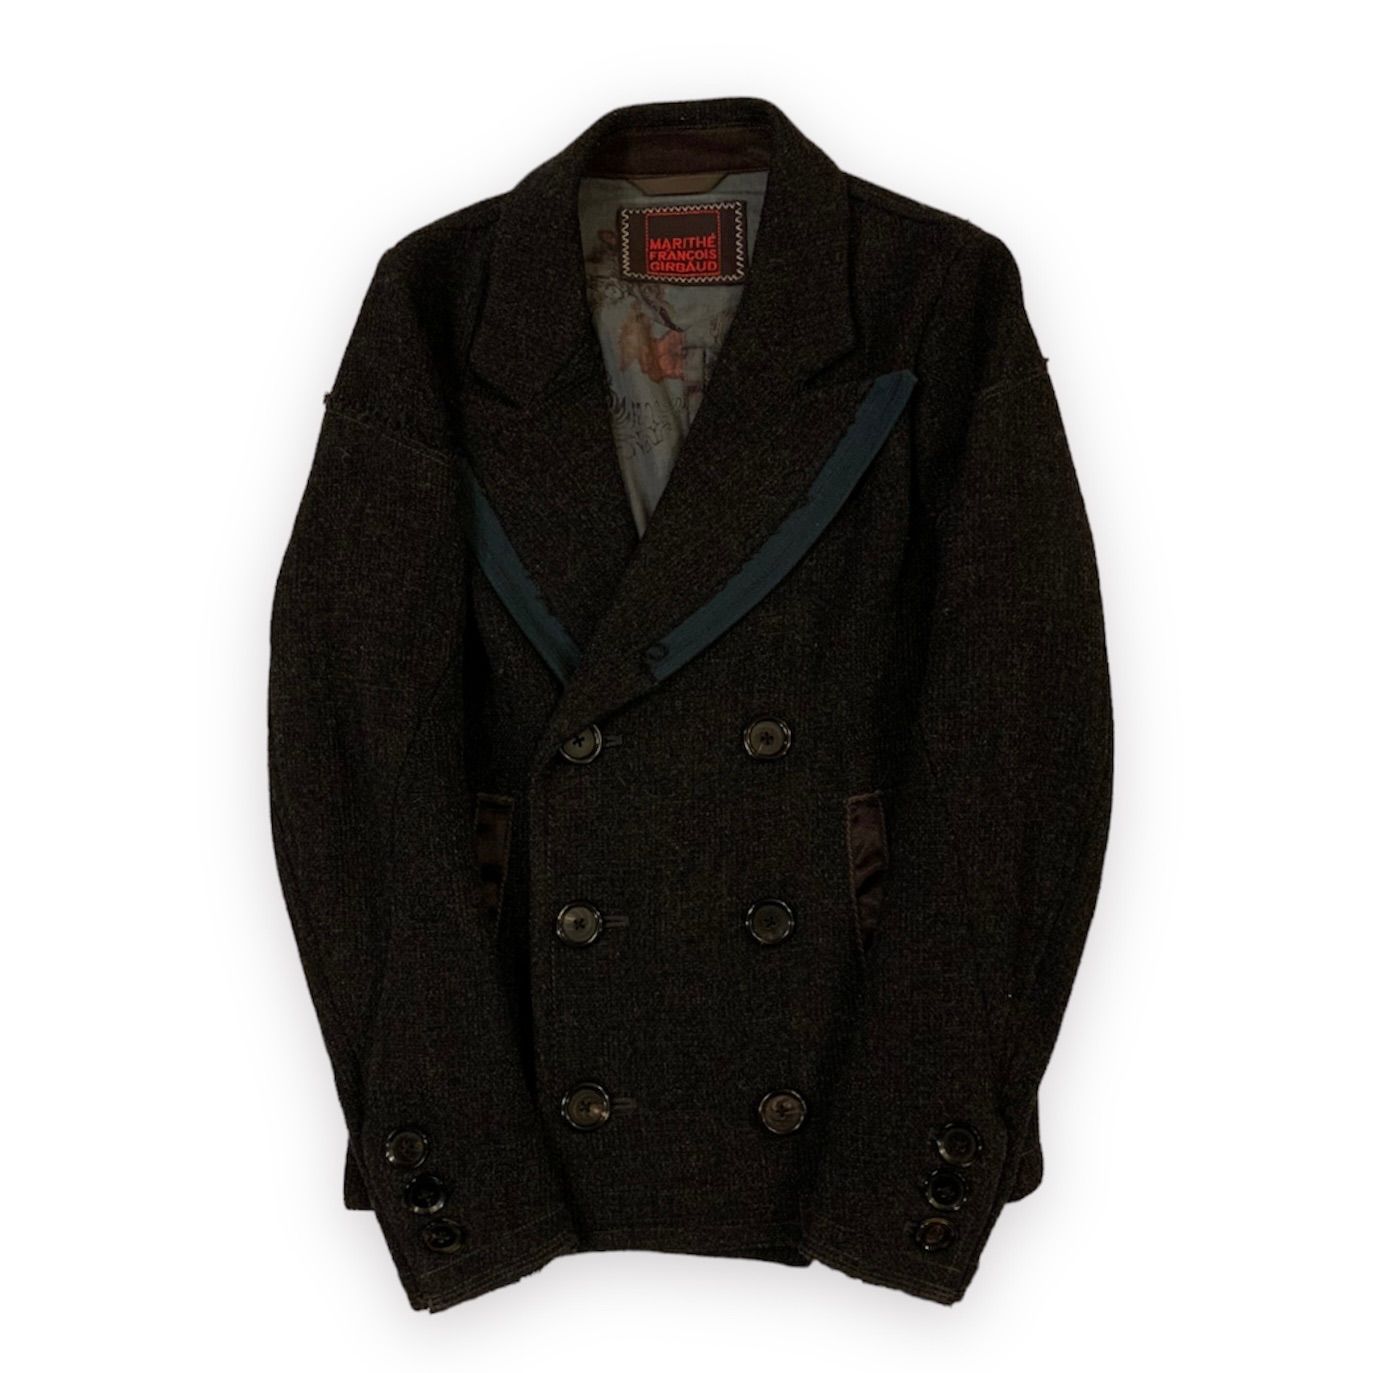 Marithe Francois Girbaud Design Wool Jacket マリテフランソワジルボー 変形 デザインウールジャケット  Sサイズ ダークグレー